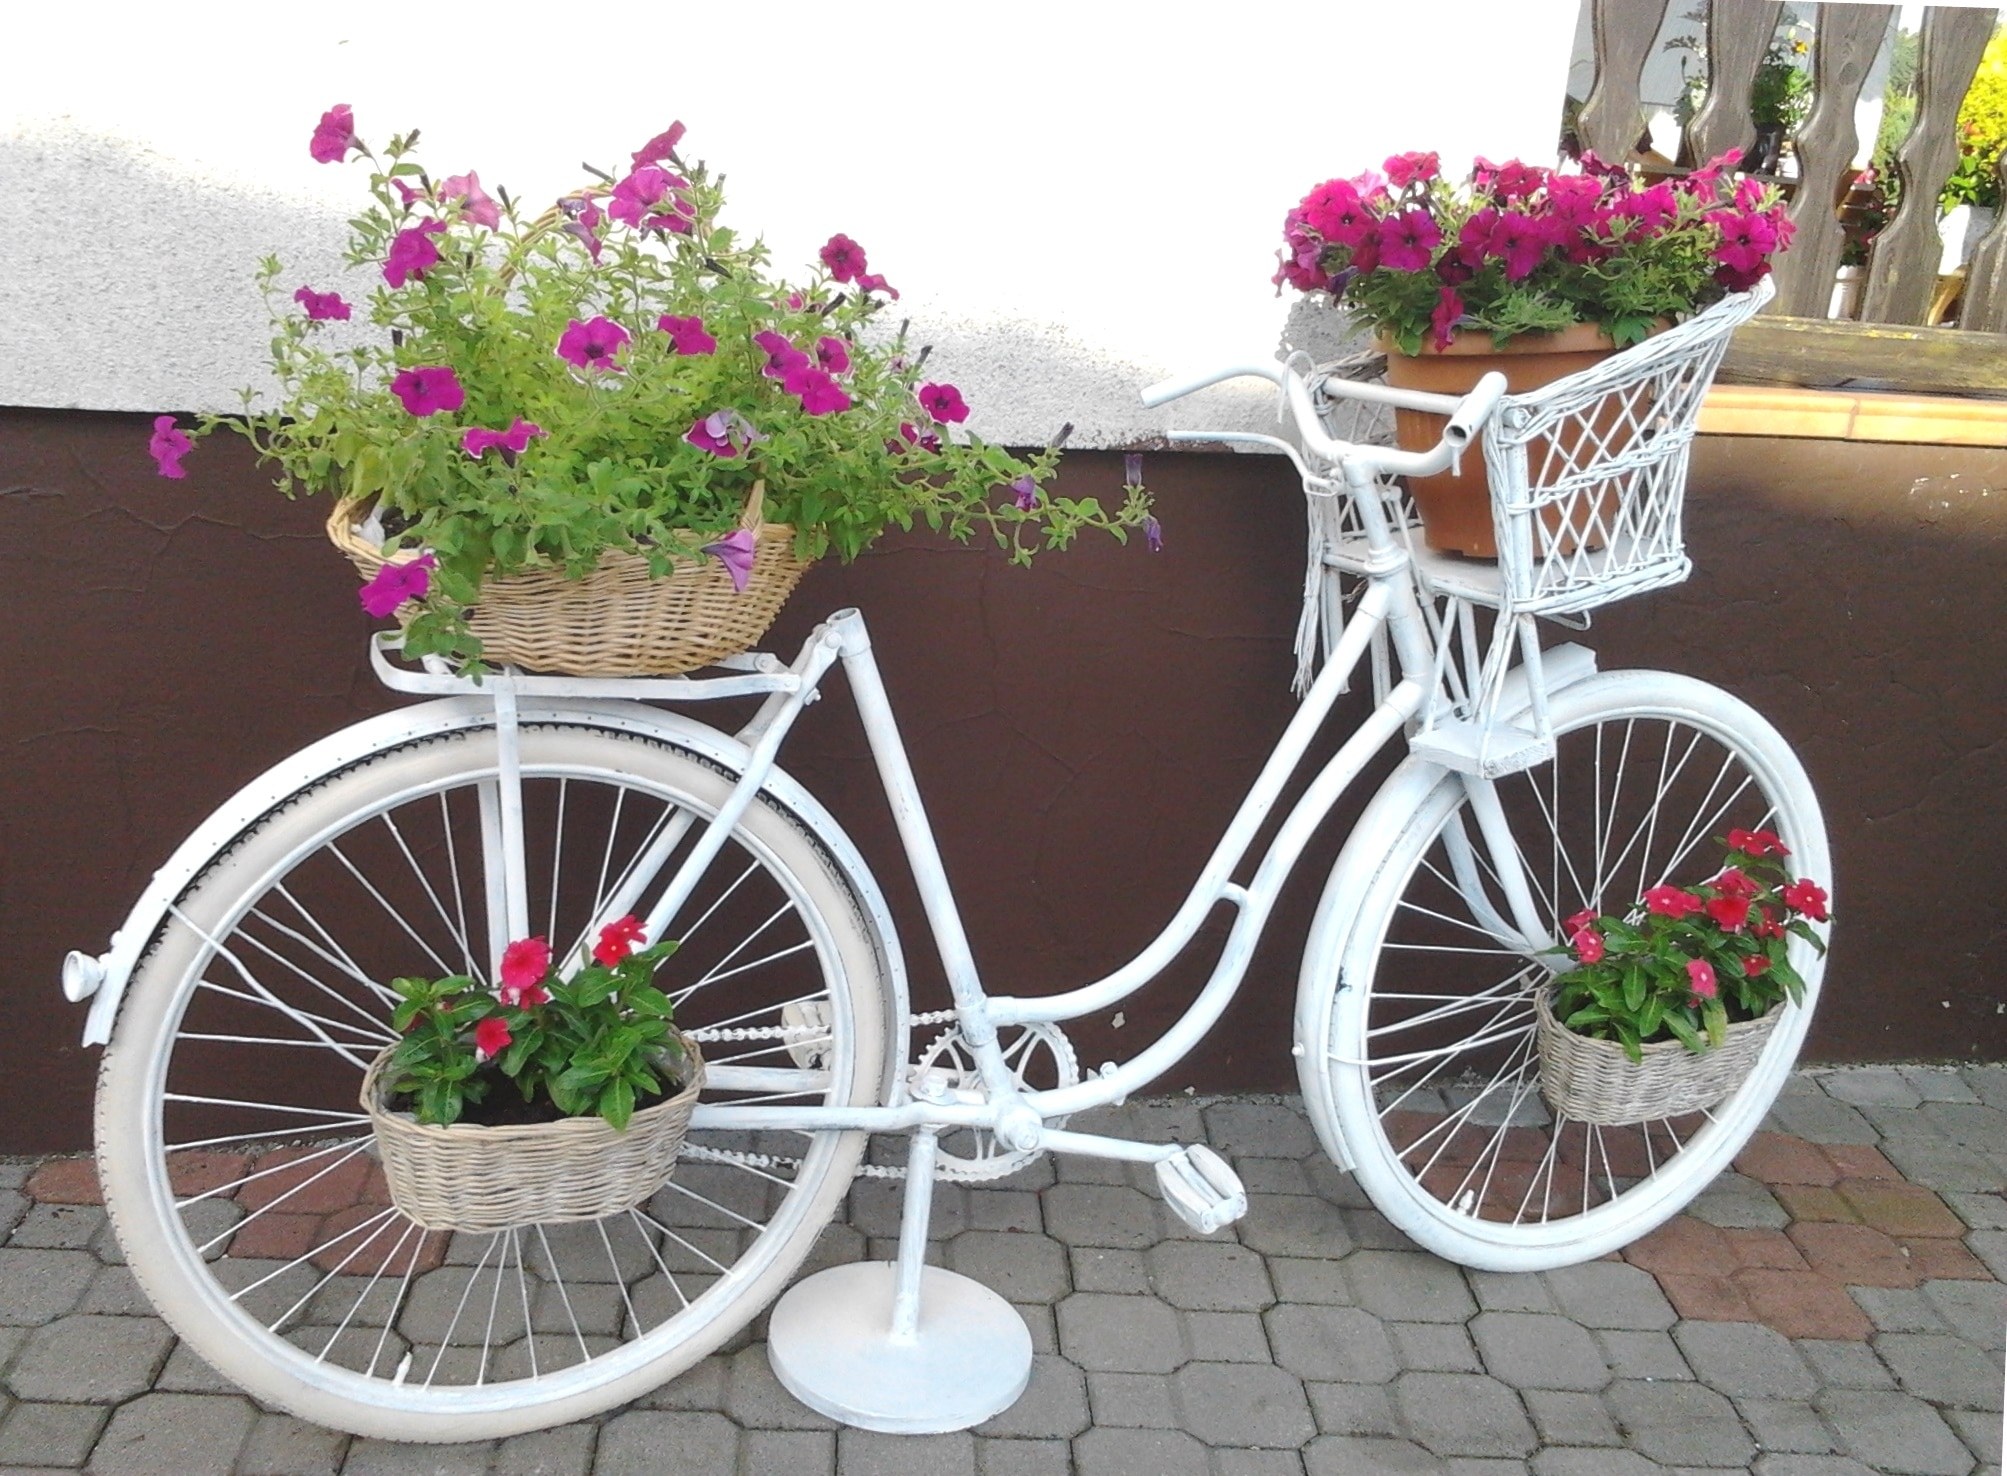 Старый велосипед с цветами — декоративная подставка для дачи